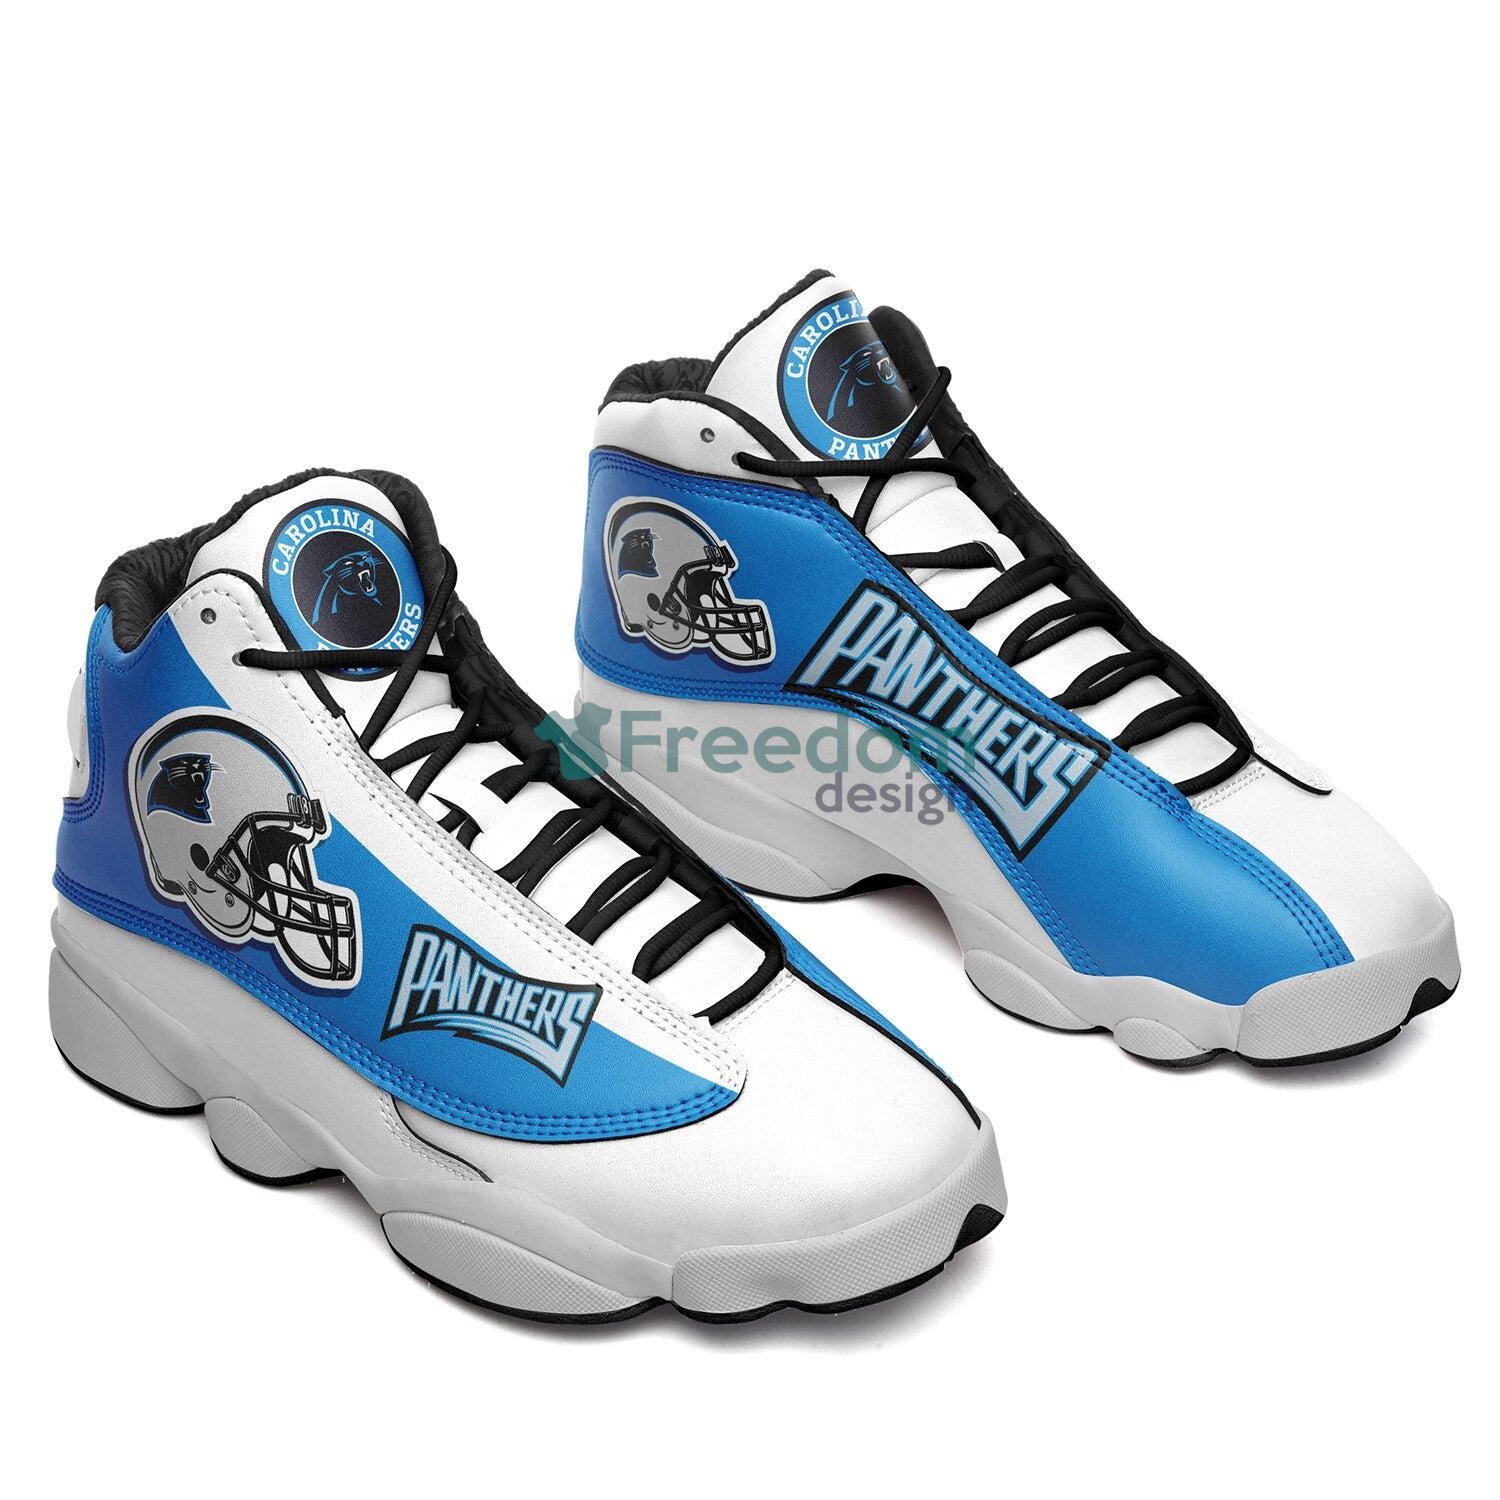 Carolina Panthers Team Air Jordan 13 Shoes For Fans